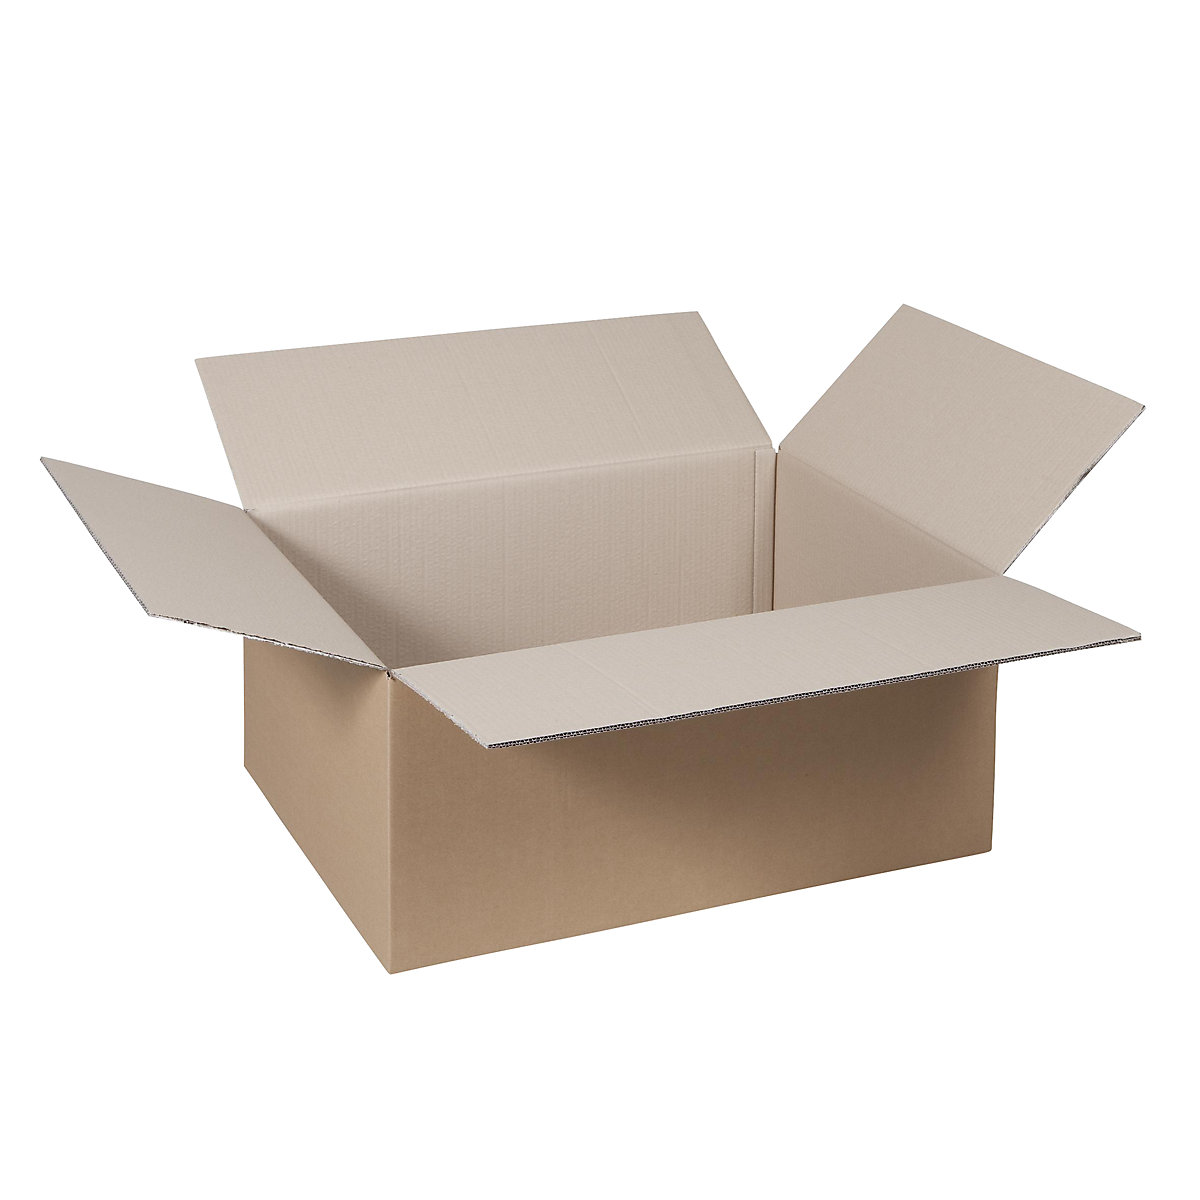 Cutie de carton pliantă, FEFCO 0201, cu 2 straturi de carton ondulat, dimensiuni interioare 315 x 220 x 90 mm, amb. 50 buc.-47